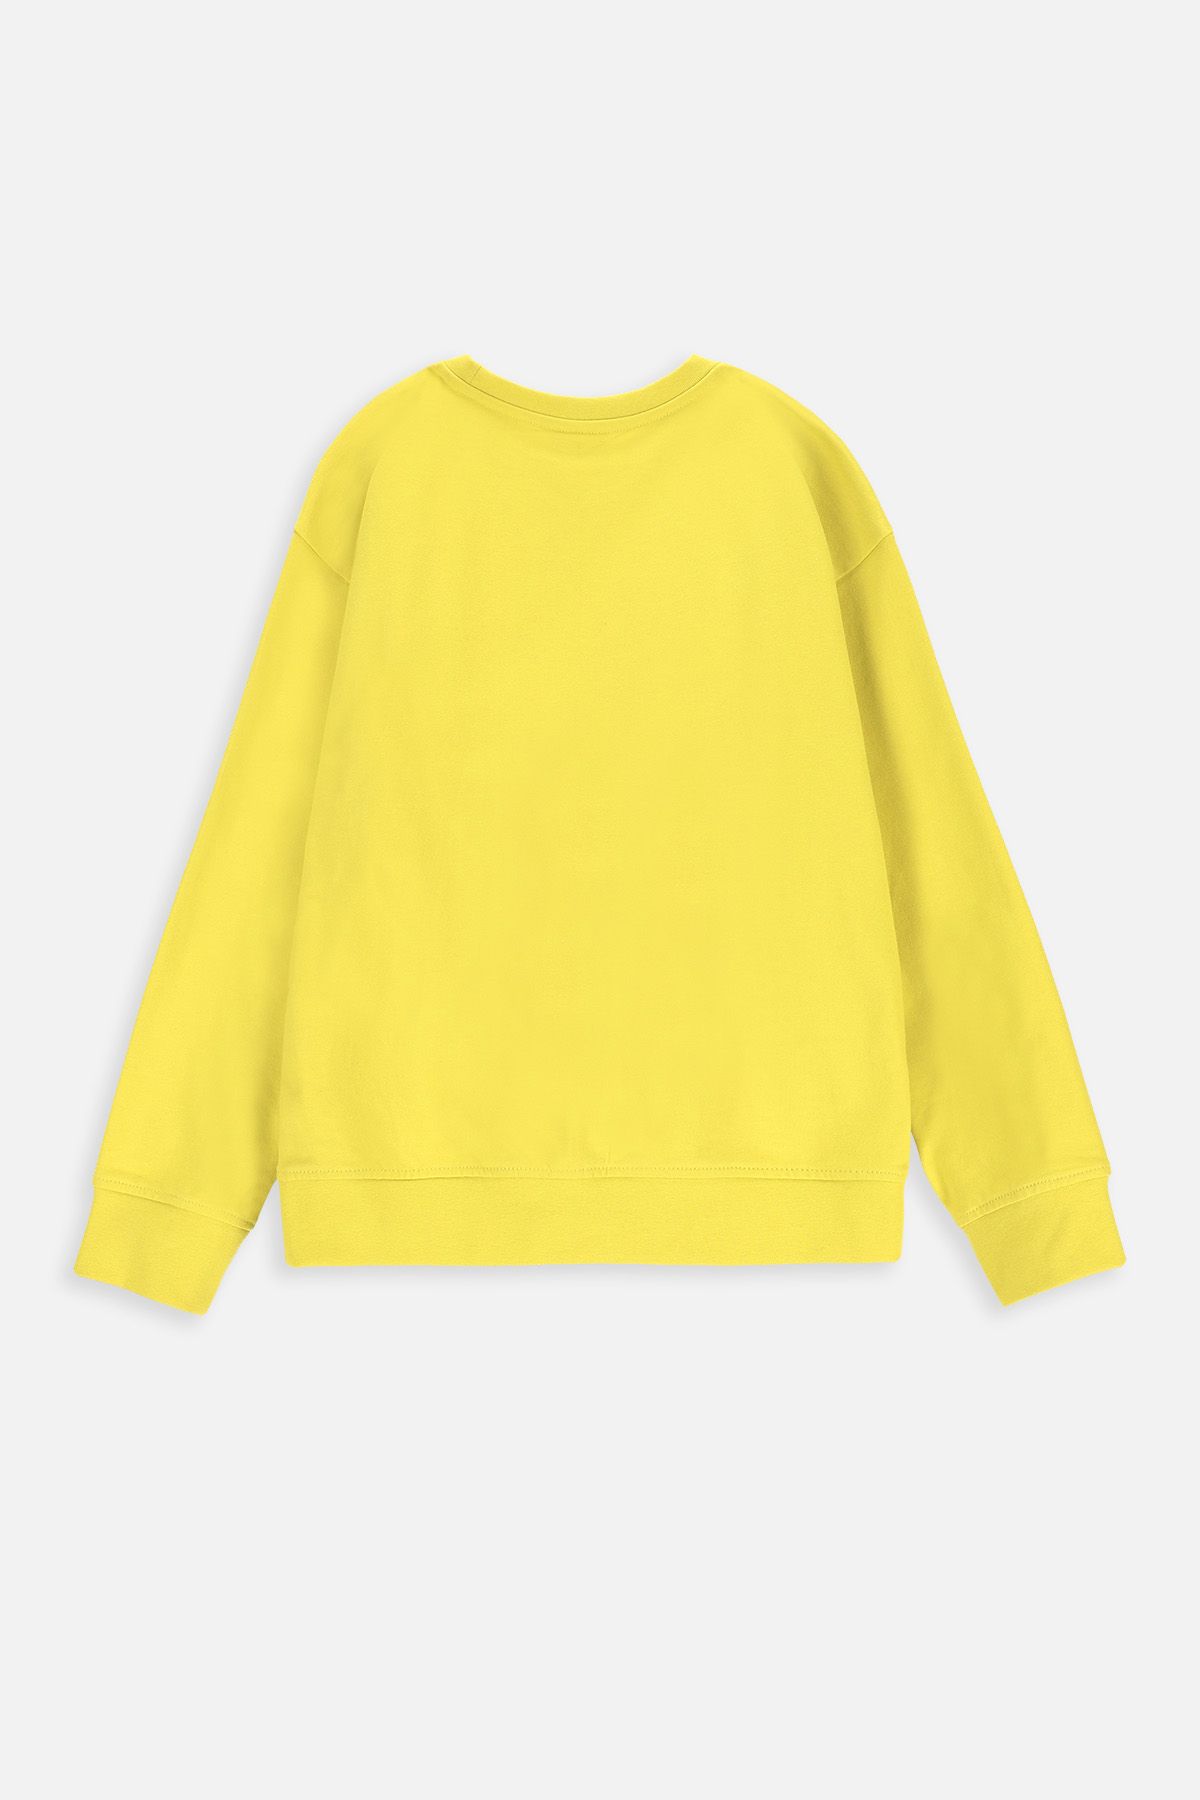 Bluza dresowa limonkowa z kieszenią typu kangurka 2228319